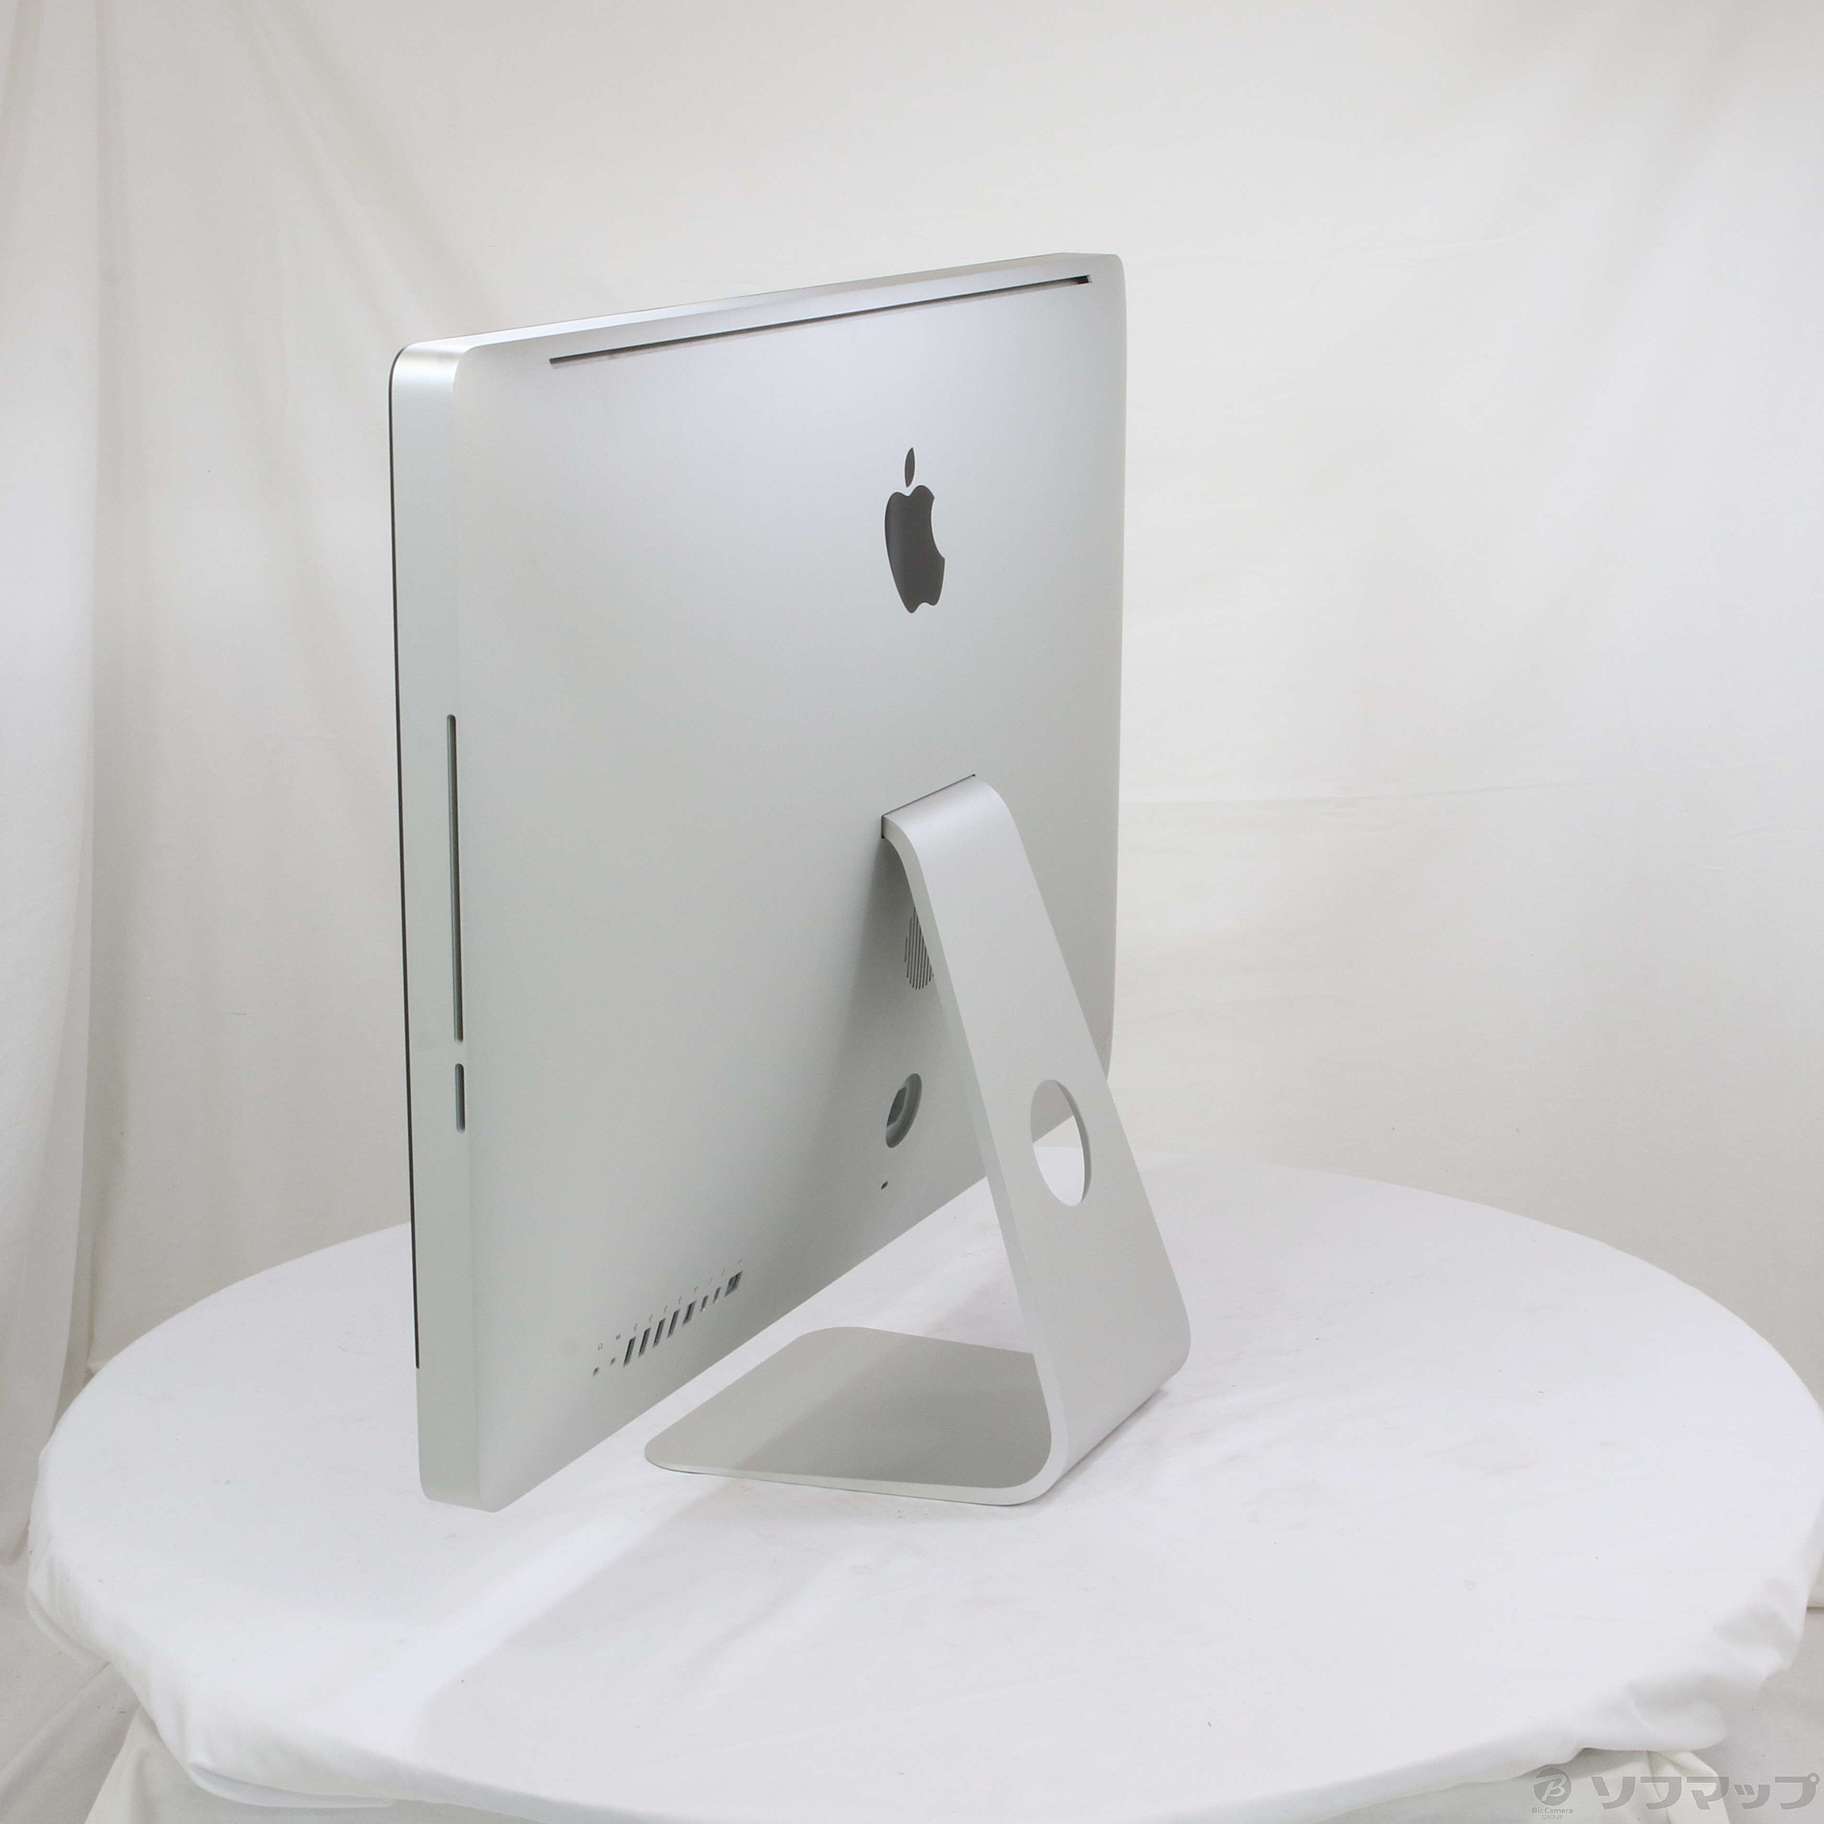 iMac 27インチ【外箱あり】Mid 2011